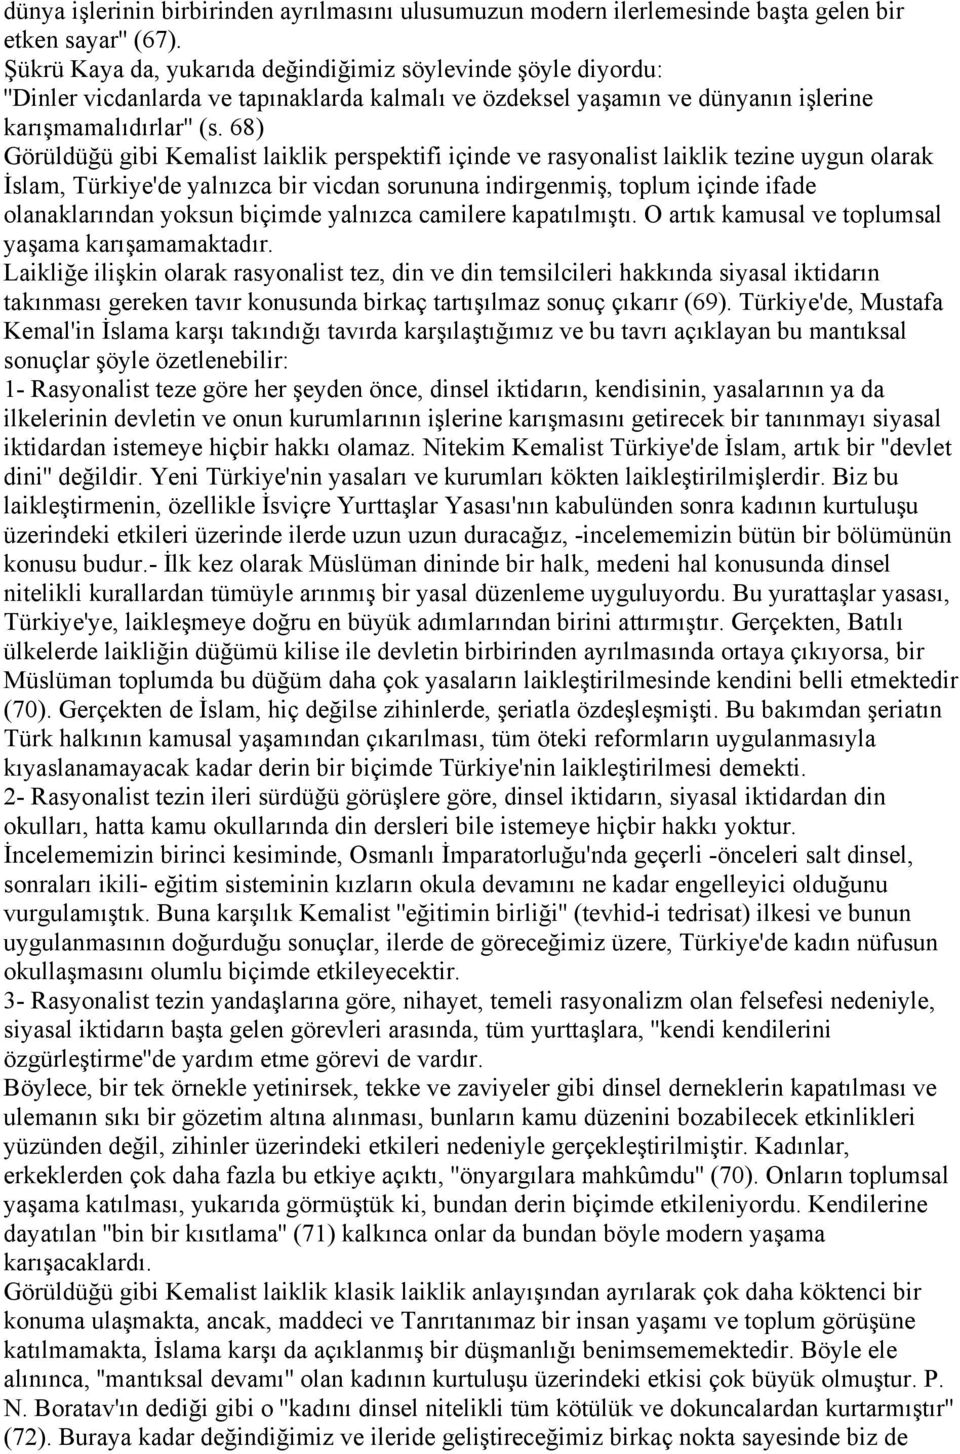 68) Görüldüğü gibi Kemalist laiklik perspektifi içinde ve rasyonalist laiklik tezine uygun olarak İslam, Türkiye'de yalnızca bir vicdan sorununa indirgenmiş, toplum içinde ifade olanaklarından yoksun